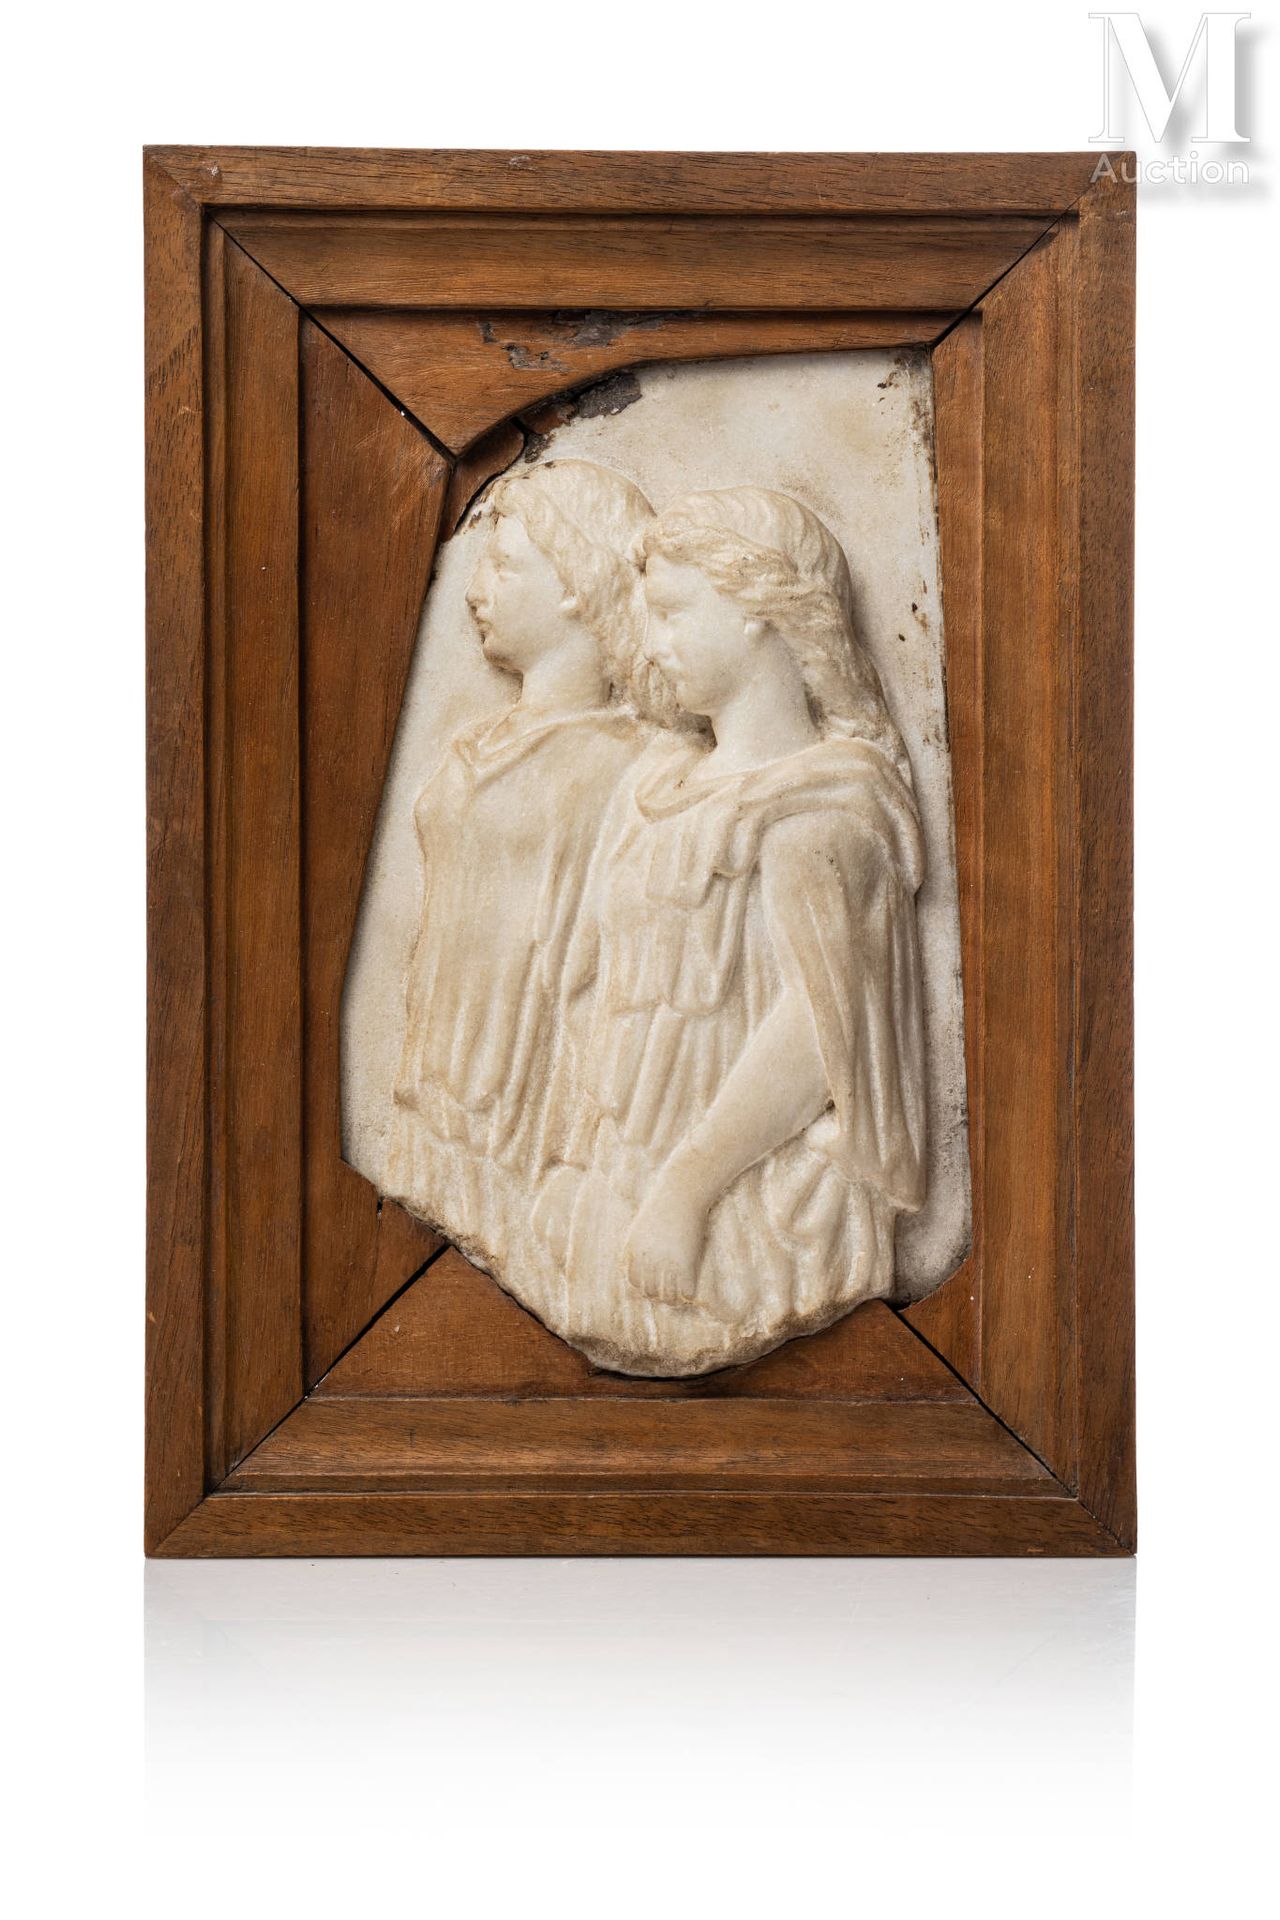 École ITALIENNE du XVIème siècle 两位圣母的侧面
白色大理石浮雕
高度：22 厘米
木框 
背面有手写标签
残缺不全